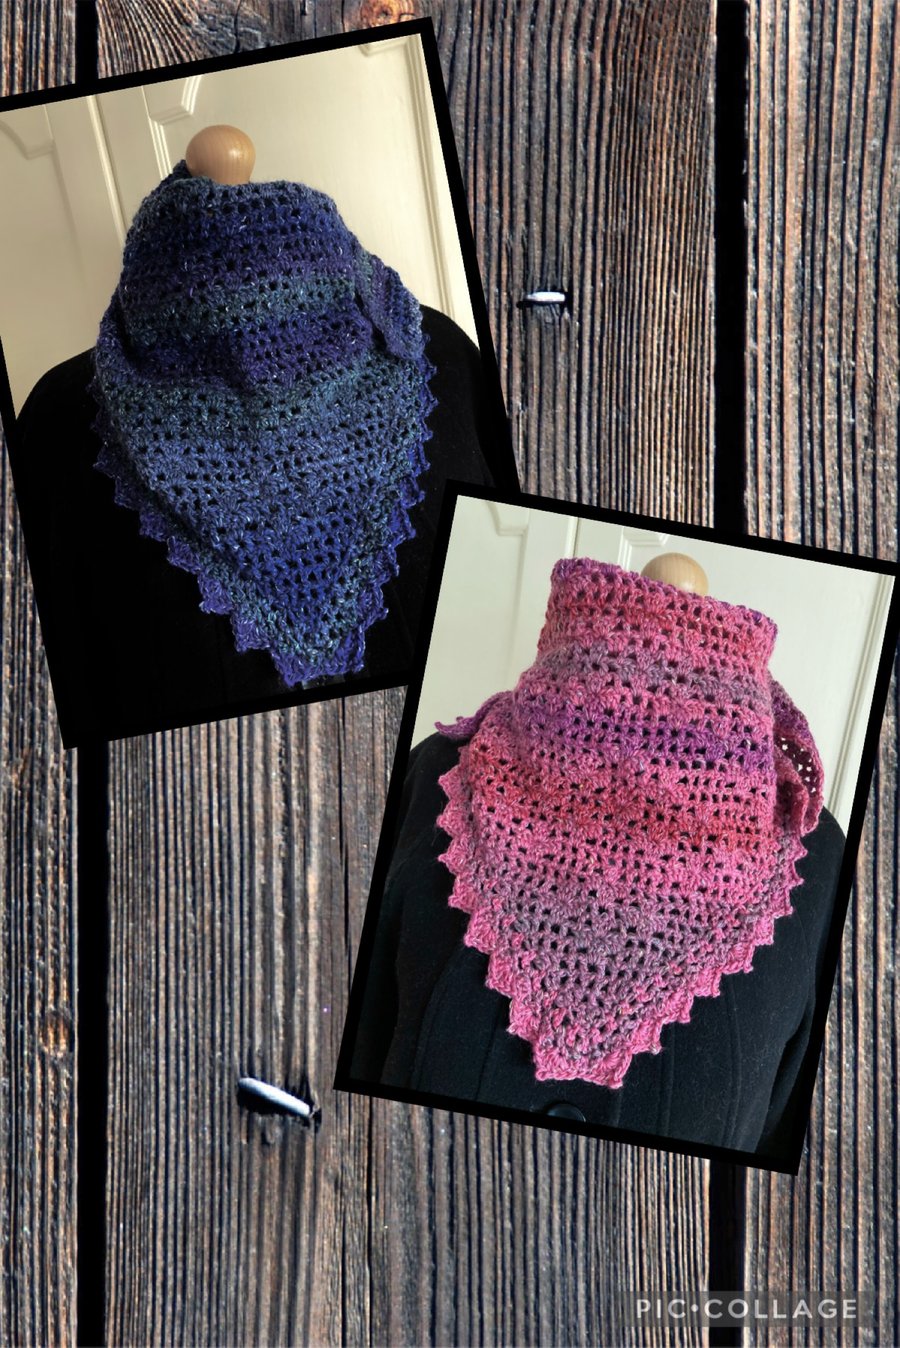 Crochet kerchief triangular scarf shawlette 